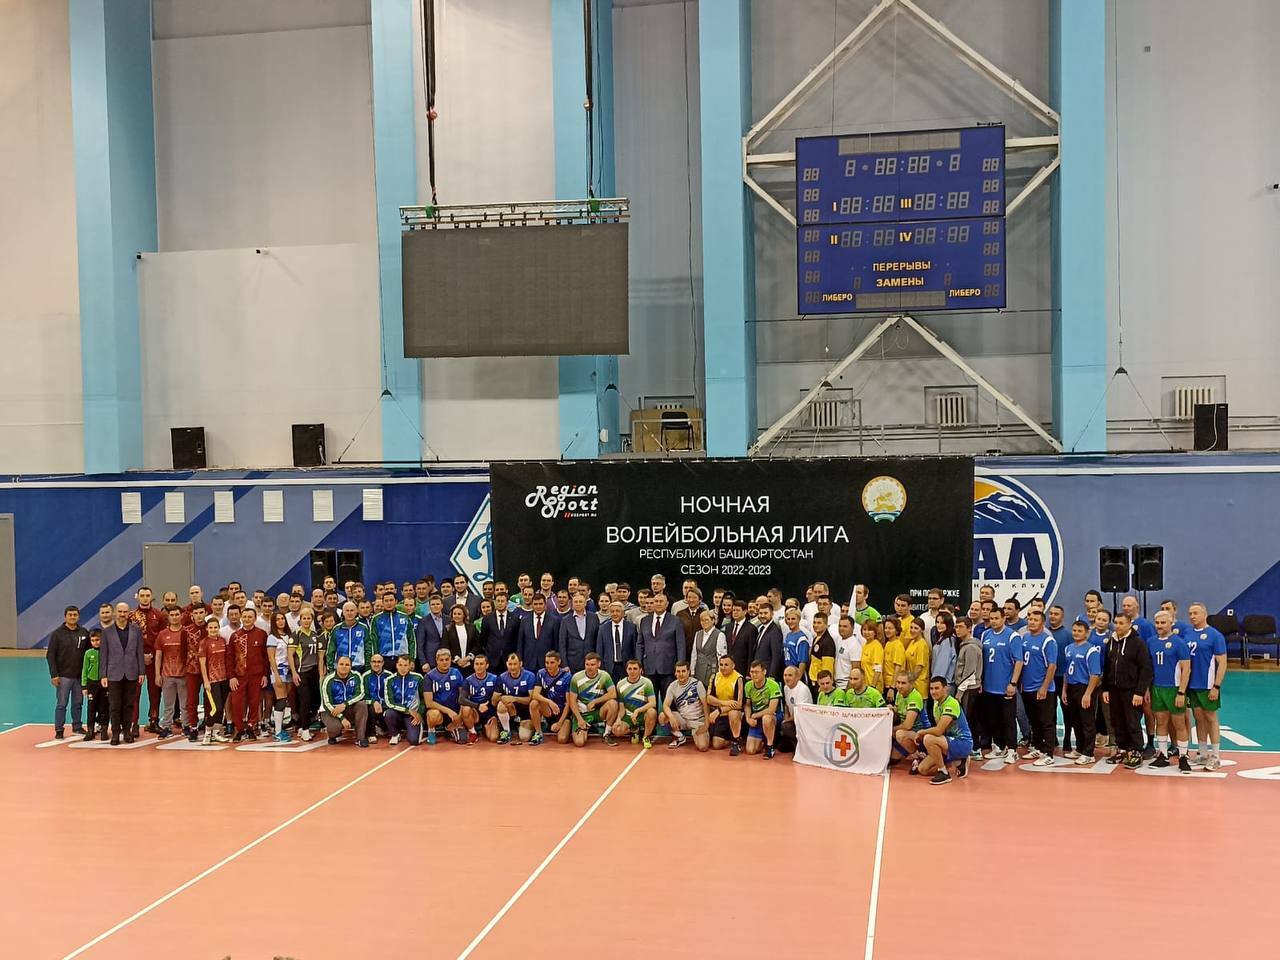 Ирек Сагитов рассказал о начале Ночной волейбольной лиги Башкирии